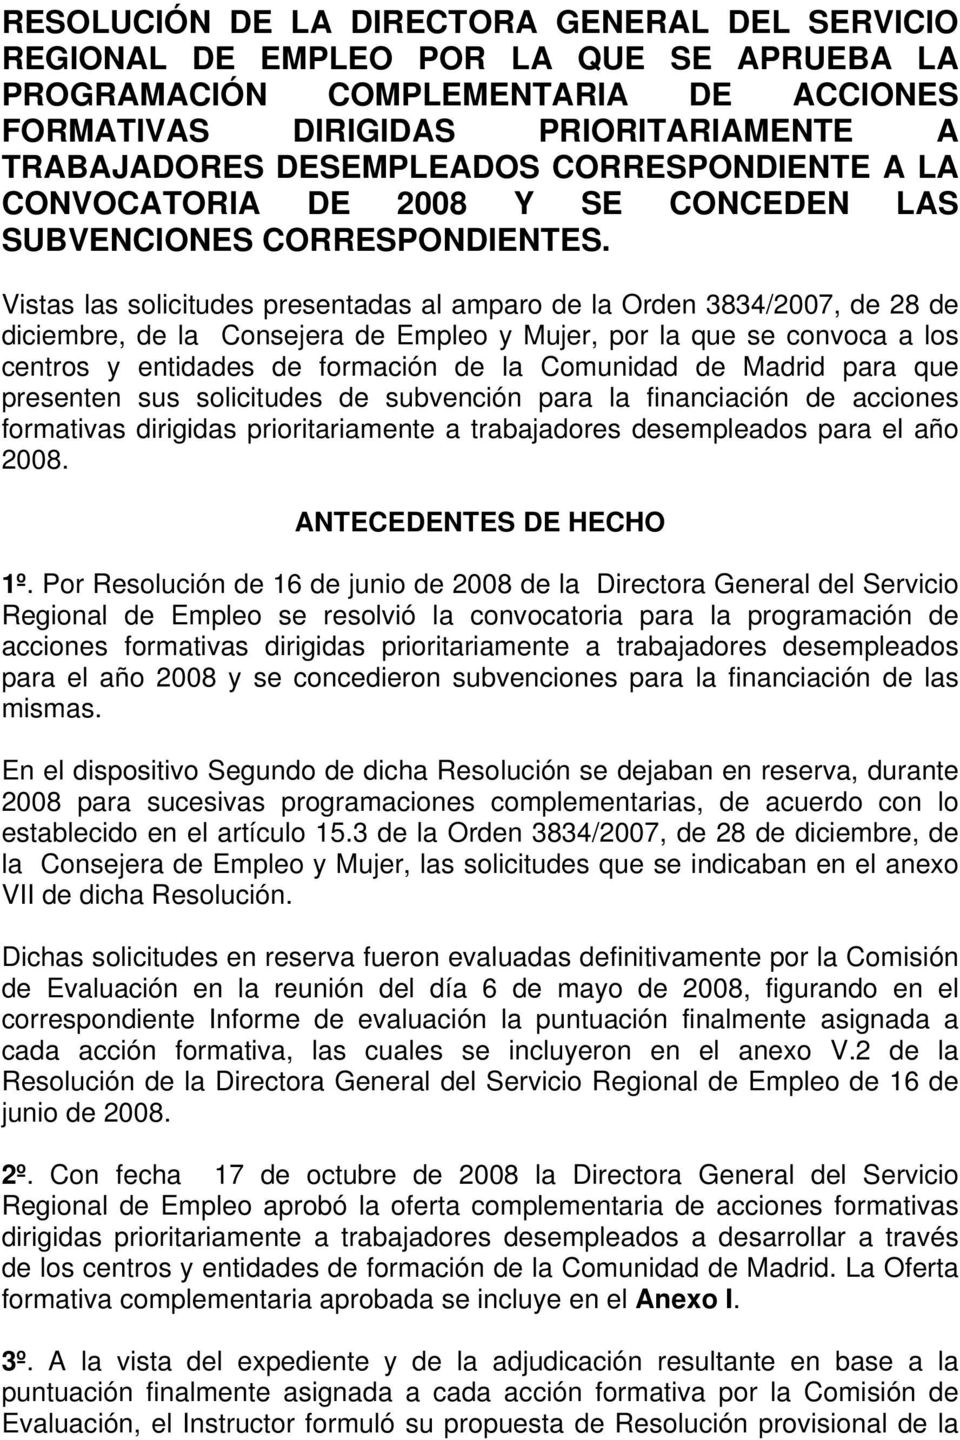 Vistas las solicitudes presentadas al amparo de la Orden 3834/2007, de 28 de diciembre, de la Consejera de Empleo y Mujer, por la que se convoca a los centros y entidades de formación de la Comunidad